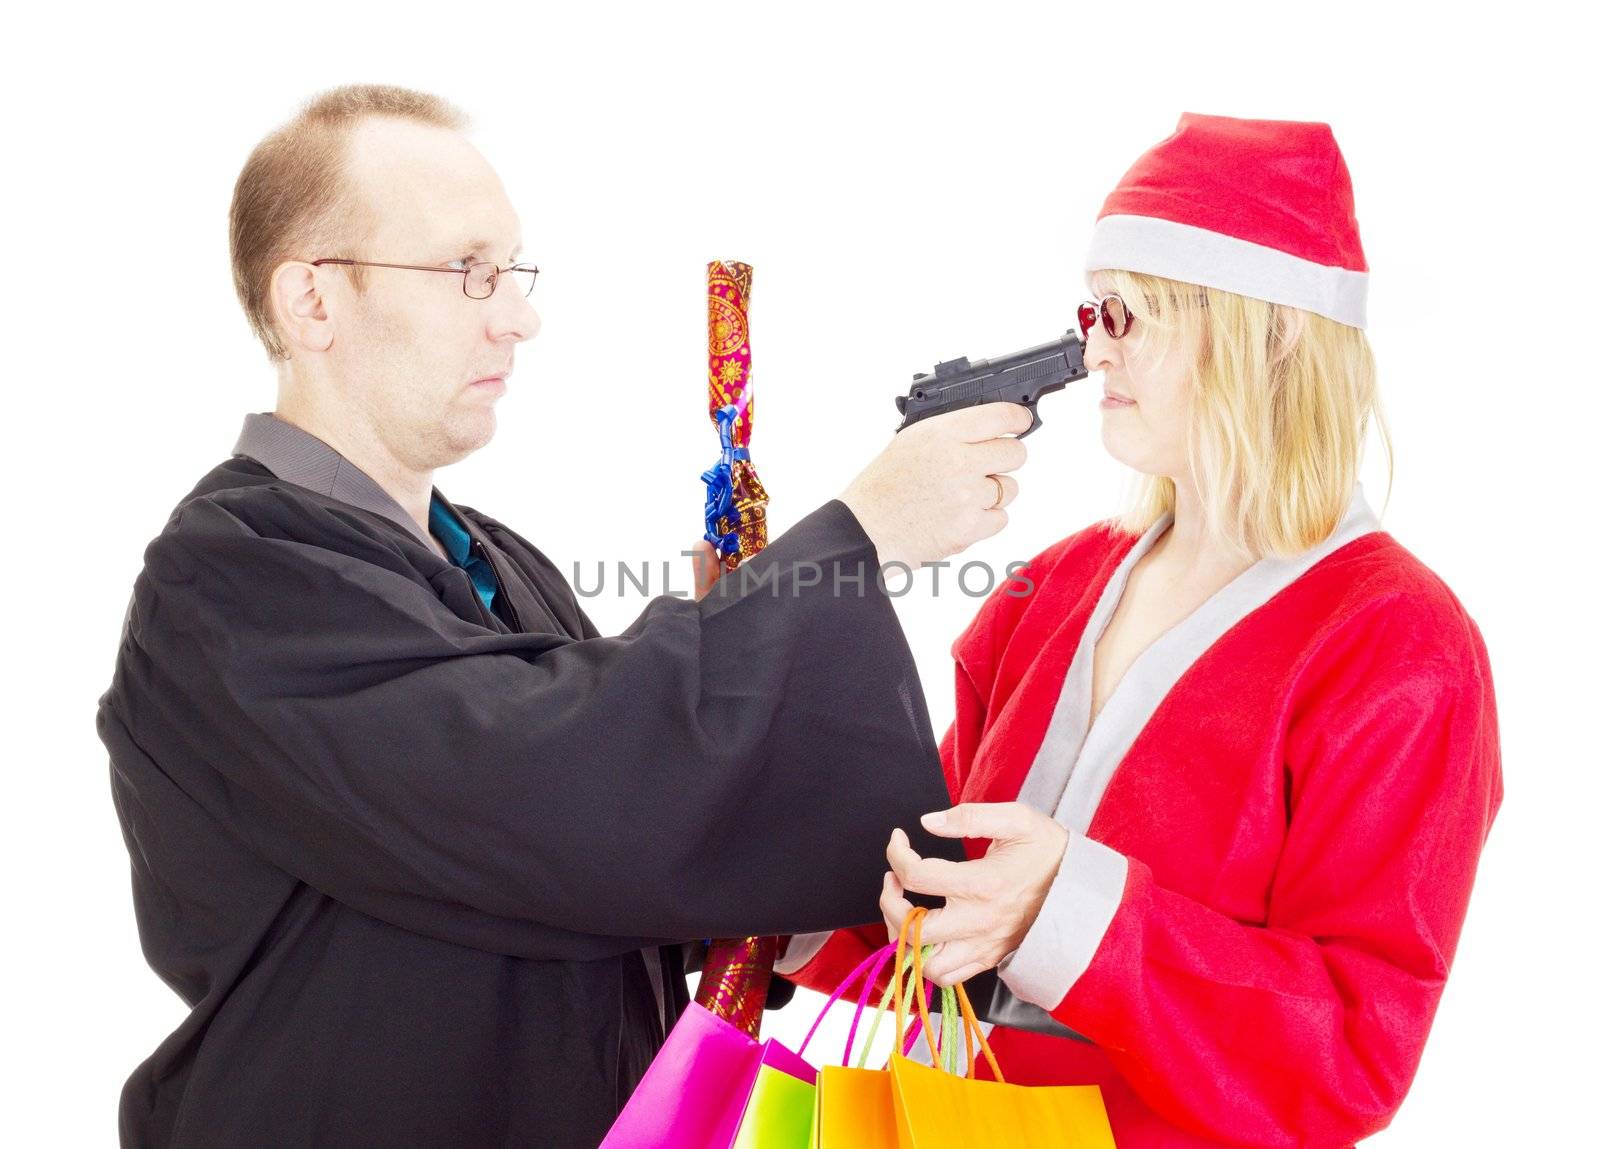 Layer hold santa claus at gunpoint